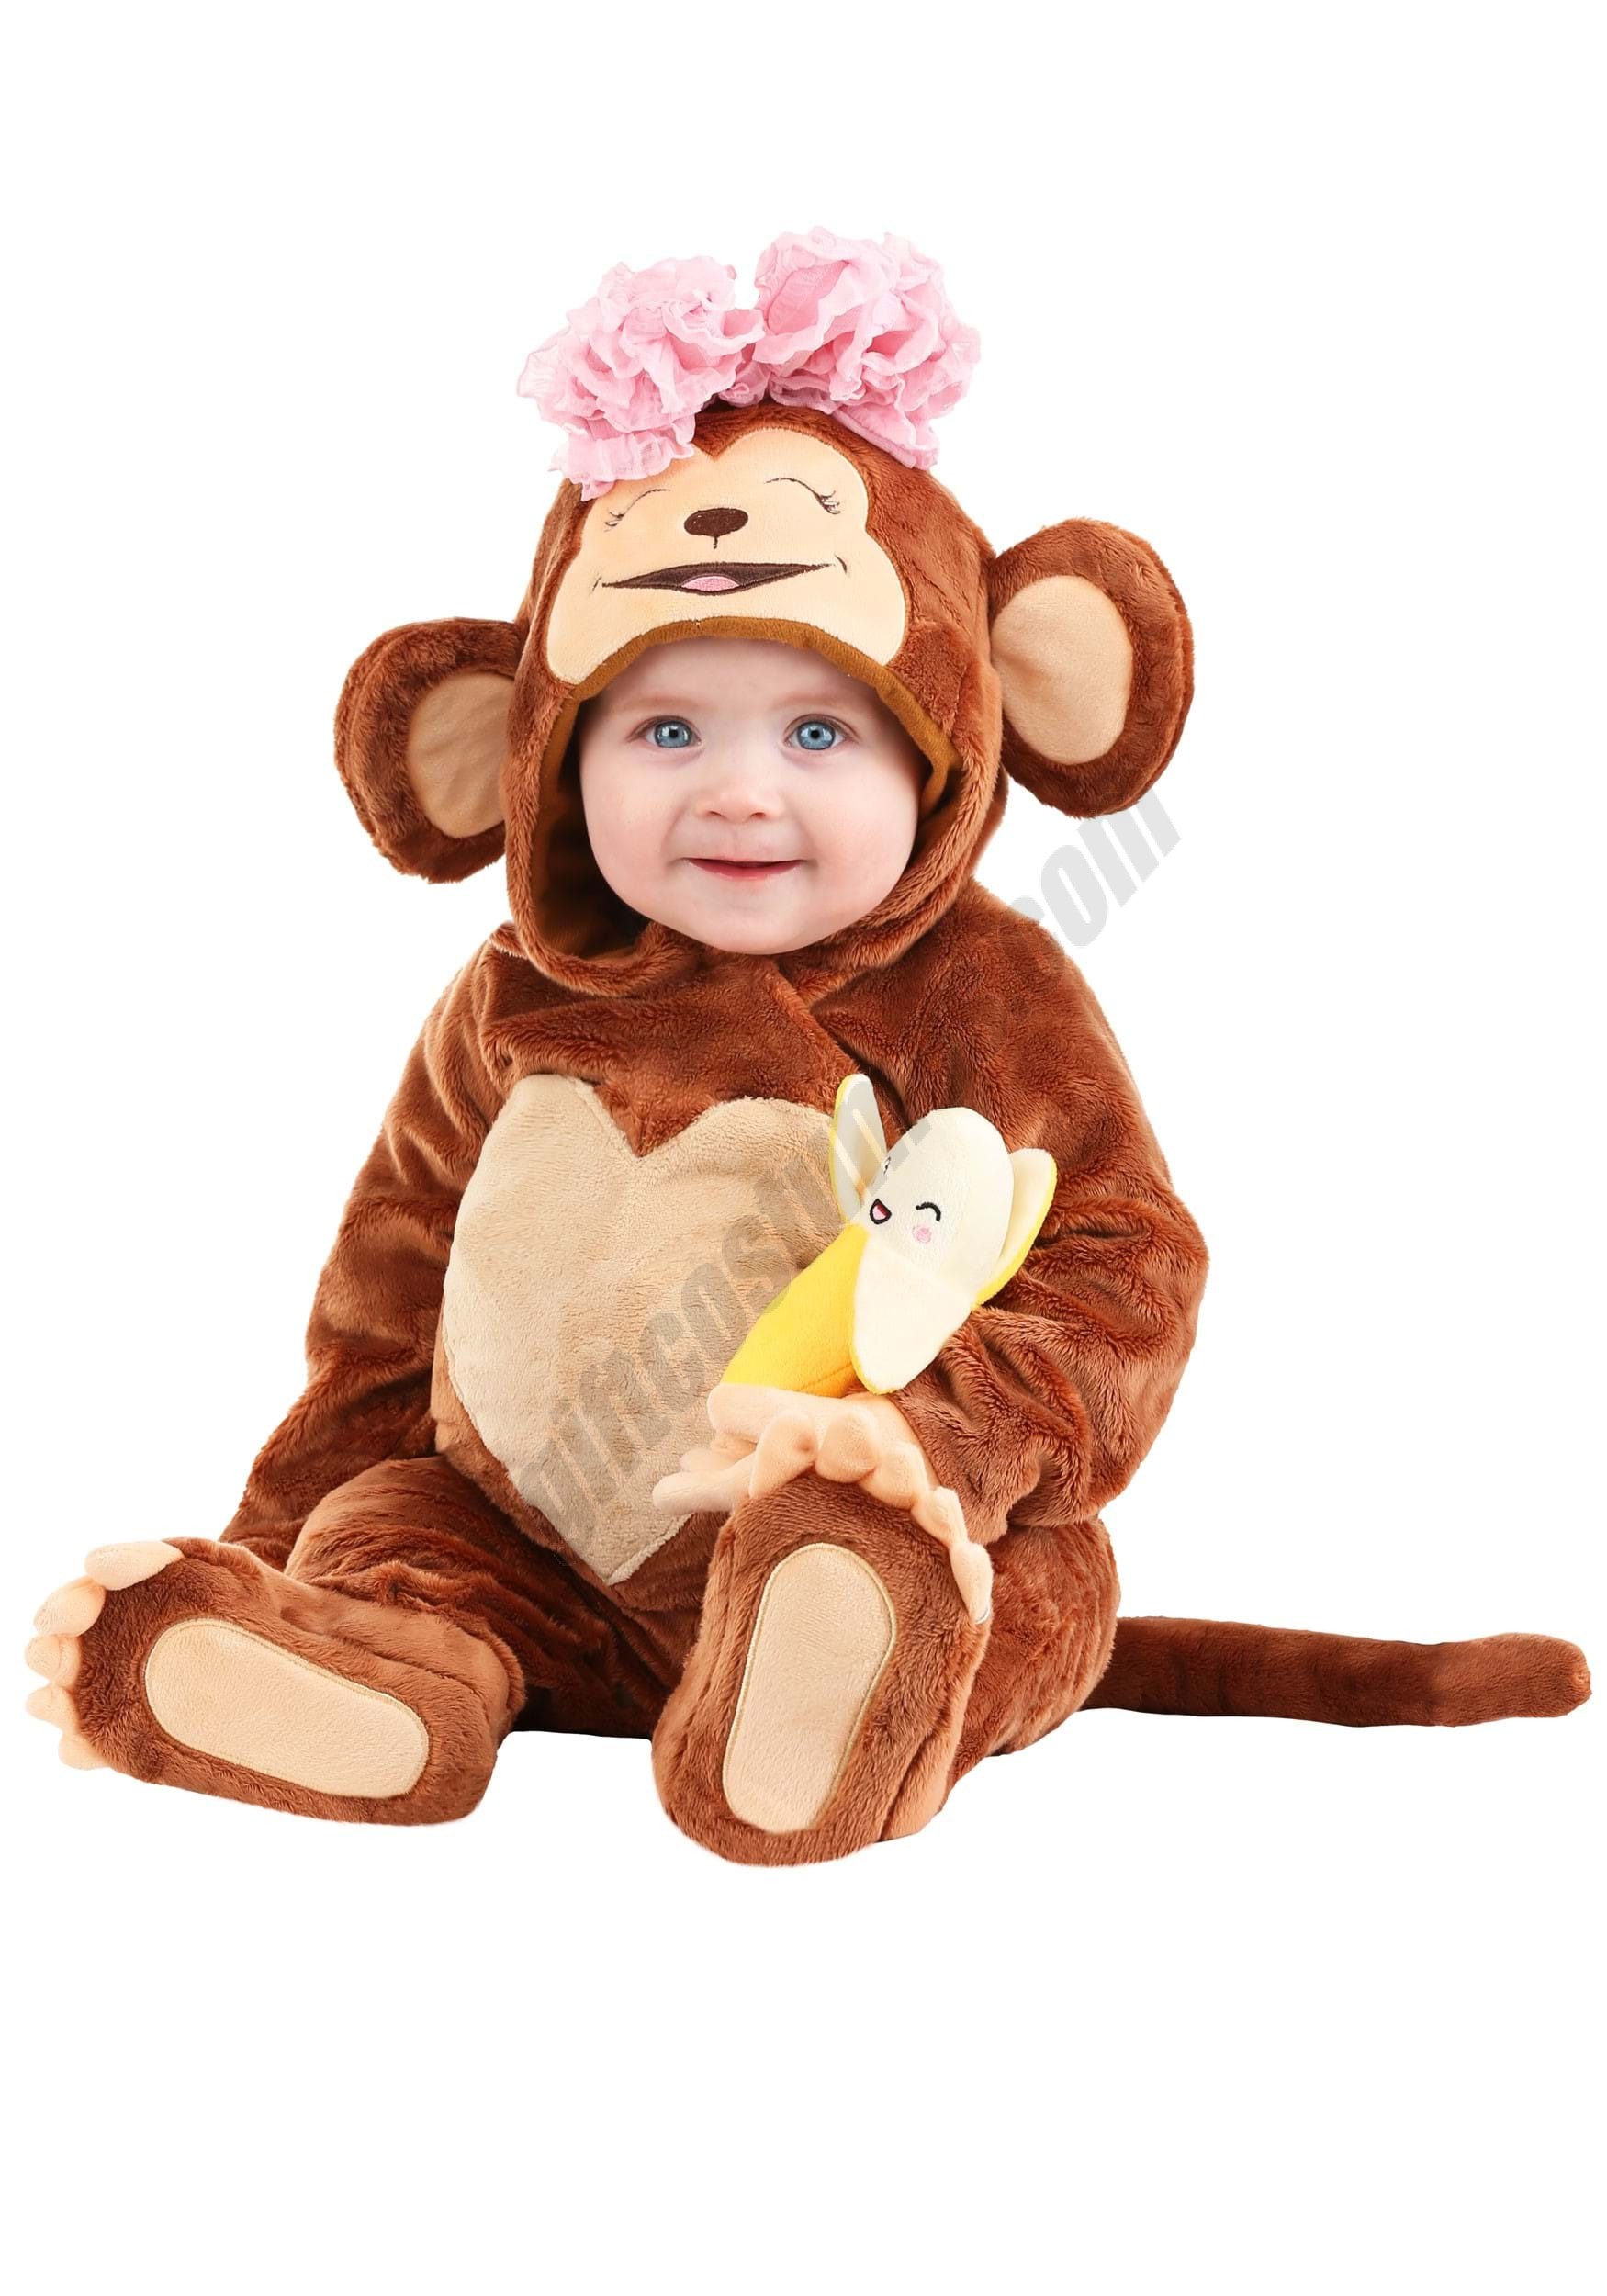 Cutie Monkey Infant Costume Promotions - Cutie Monkey Infant Costume Promotions